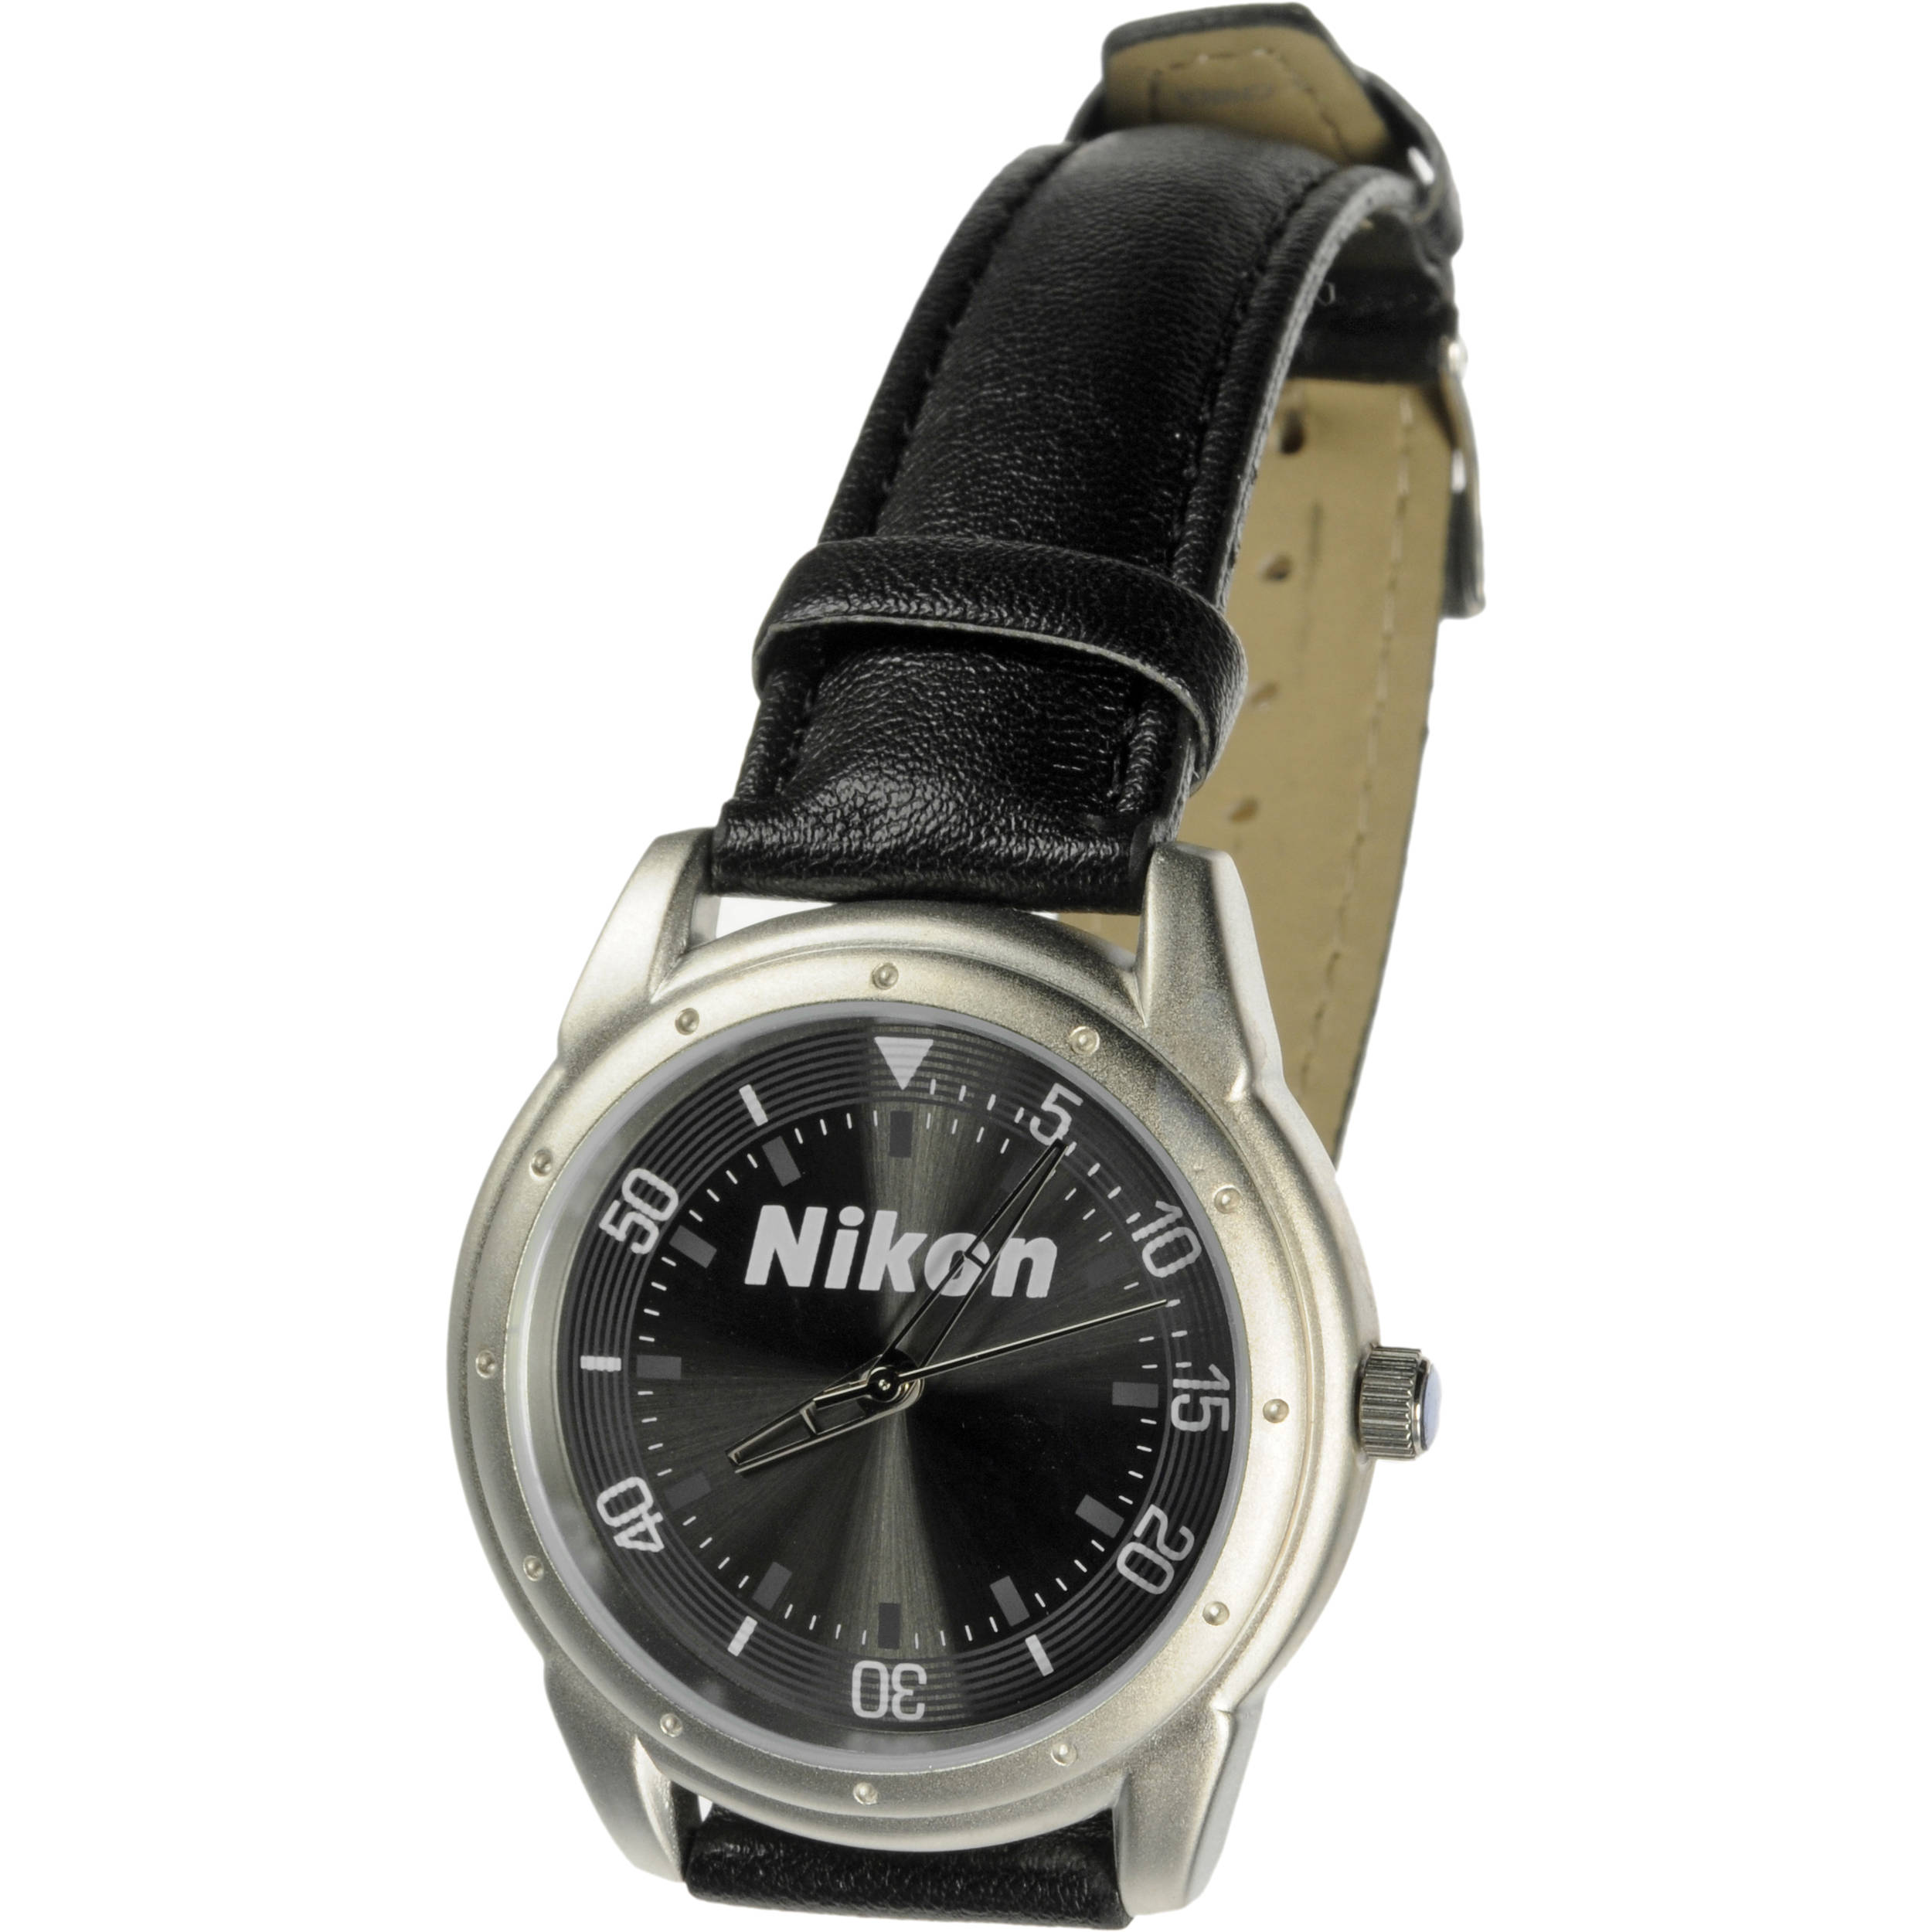 Nikon Wrist Watch w/ Leather Strap B\u0026H 